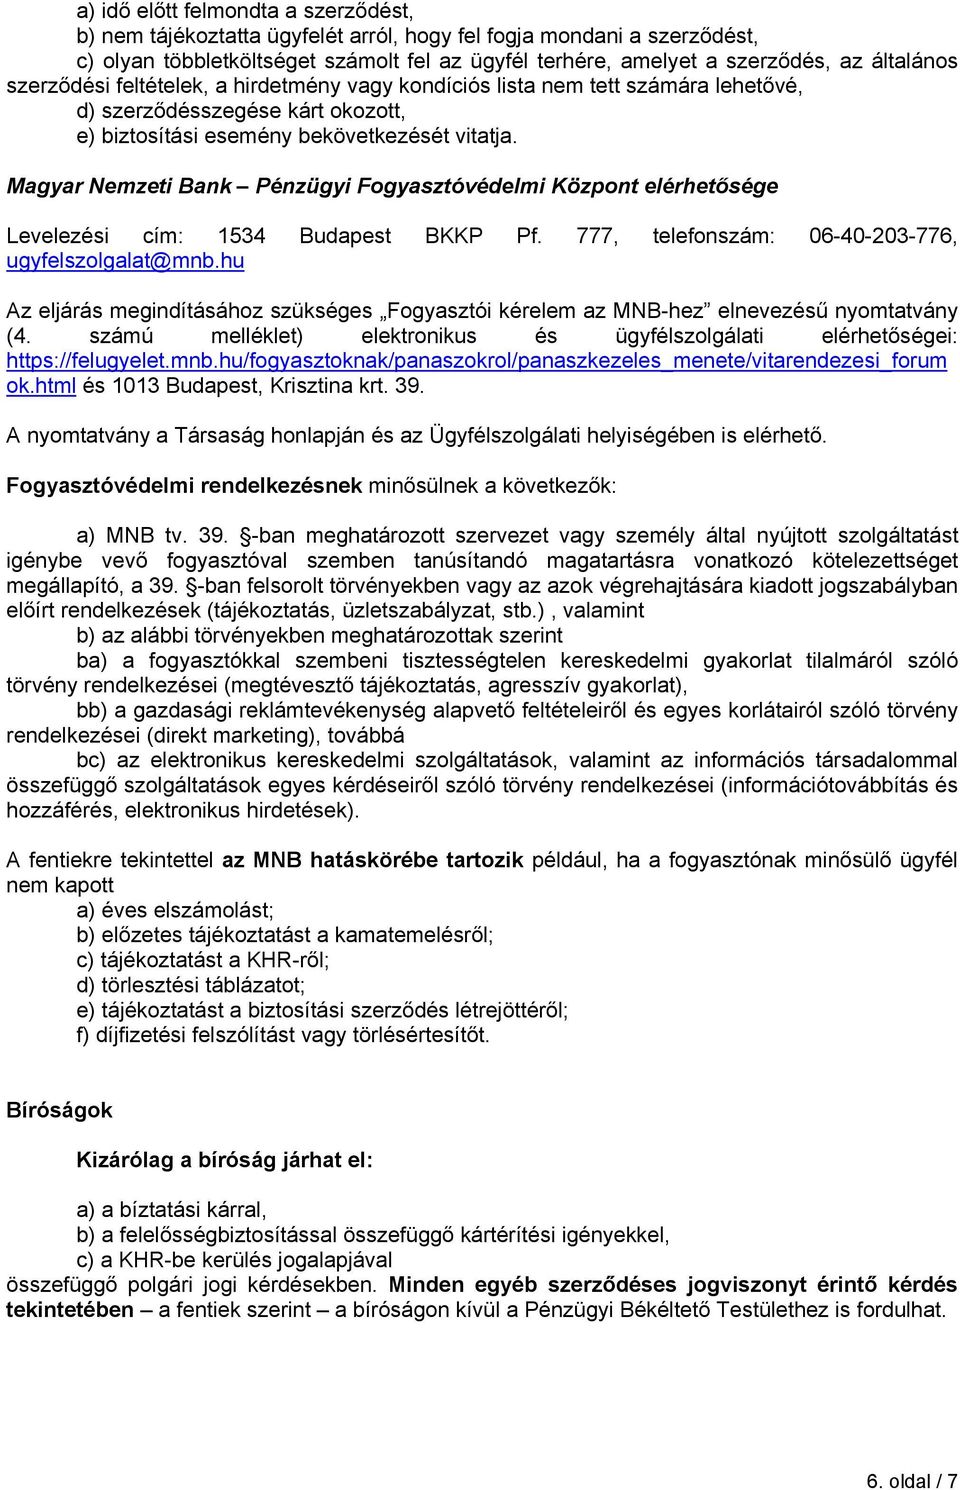 Magyar Nemzeti Bank Pénzügyi Fogyasztóvédelmi Központ elérhetősége Levelezési cím: 1534 Budapest BKKP Pf. 777, telefonszám: 06-40-203-776, ugyfelszolgalat@mnb.